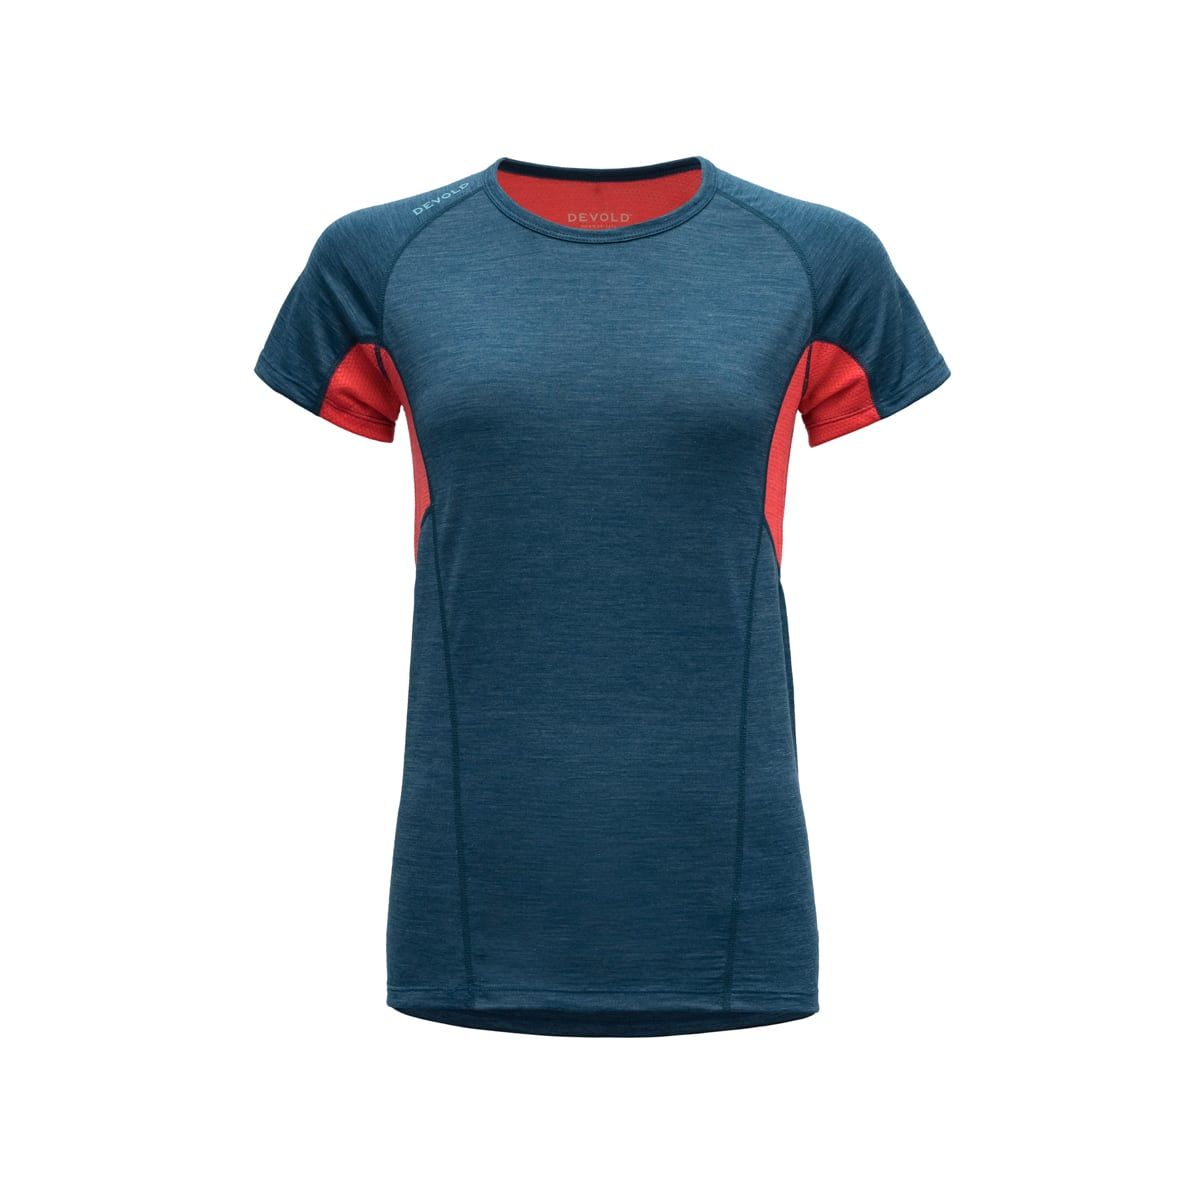 Devold Running Woman T-Shirt Flood